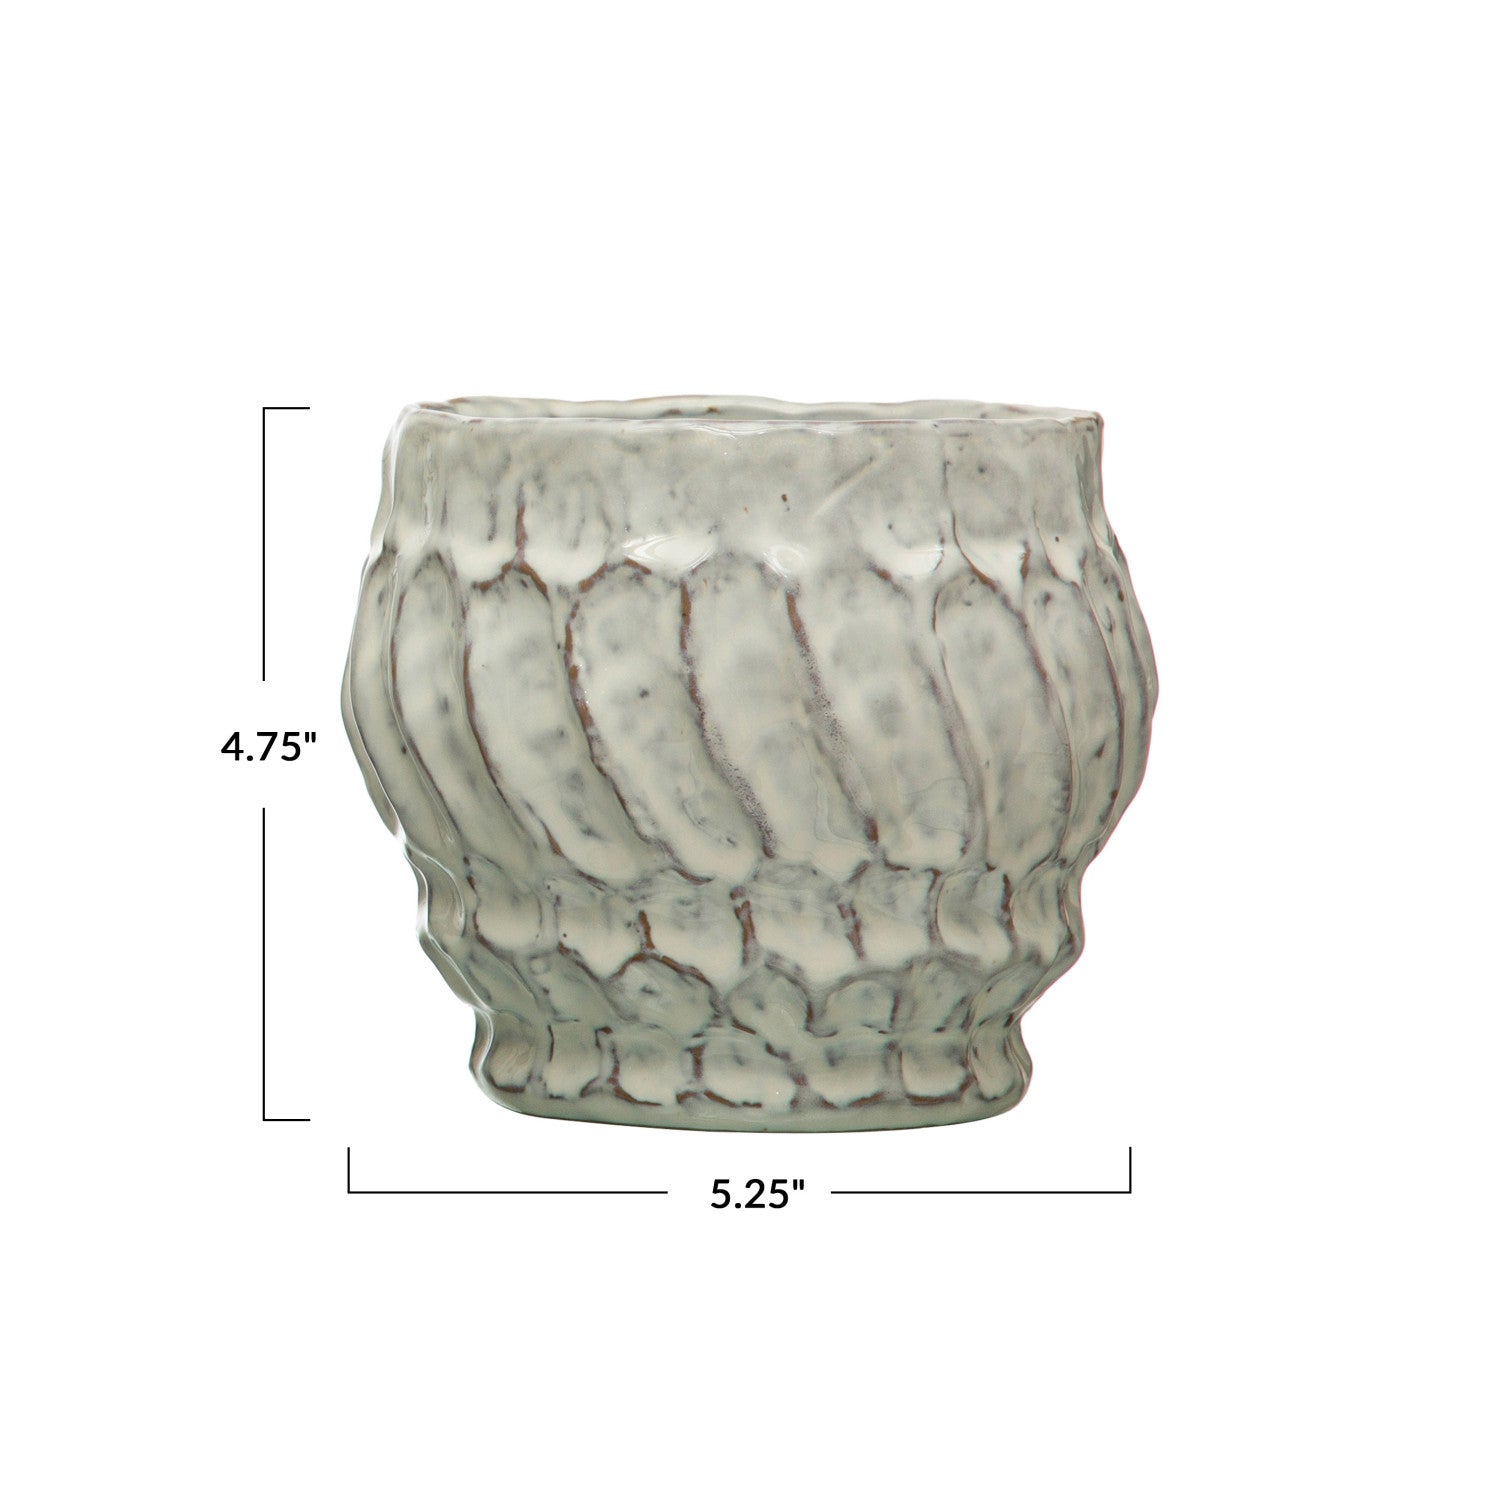 5 1/4" Round Embossed Swirl Stoneware